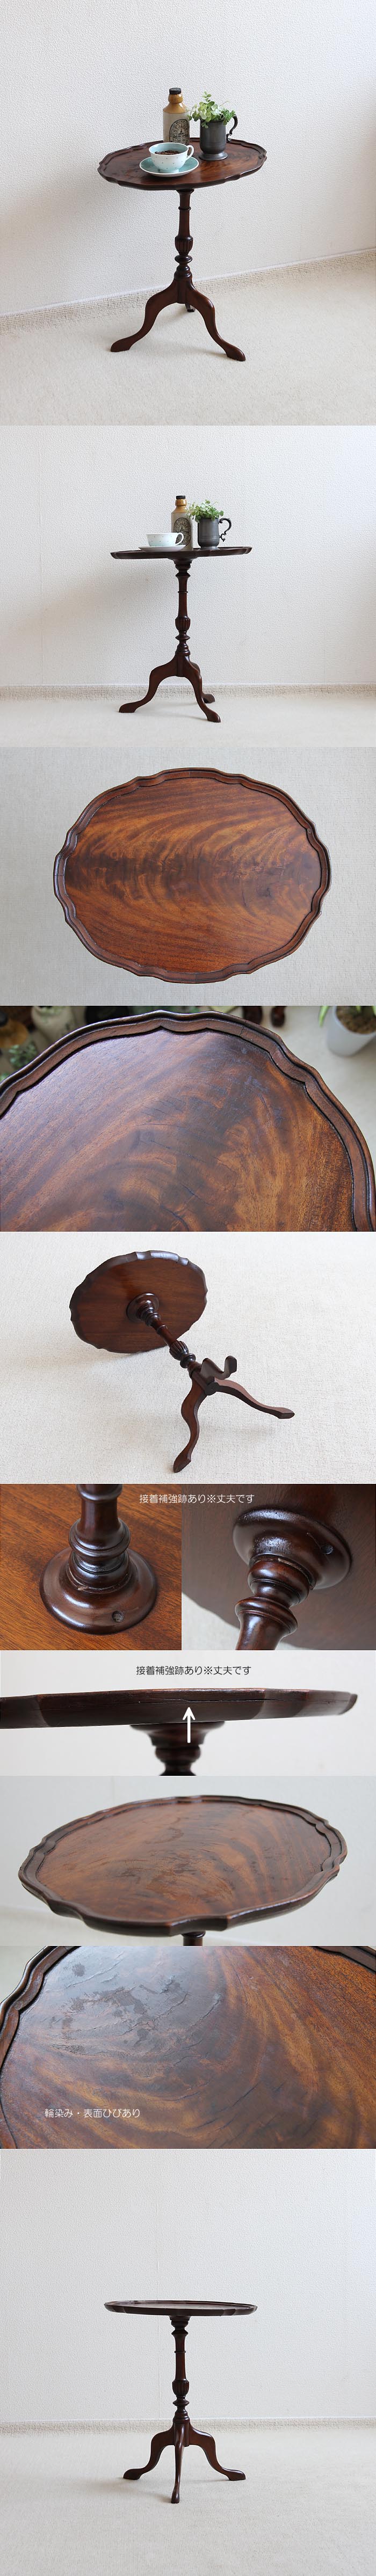 【訳あり】イギリス アンティーク調  ワインテーブル トライポッド 英国 クラシカル家具「飾り台に」V-540